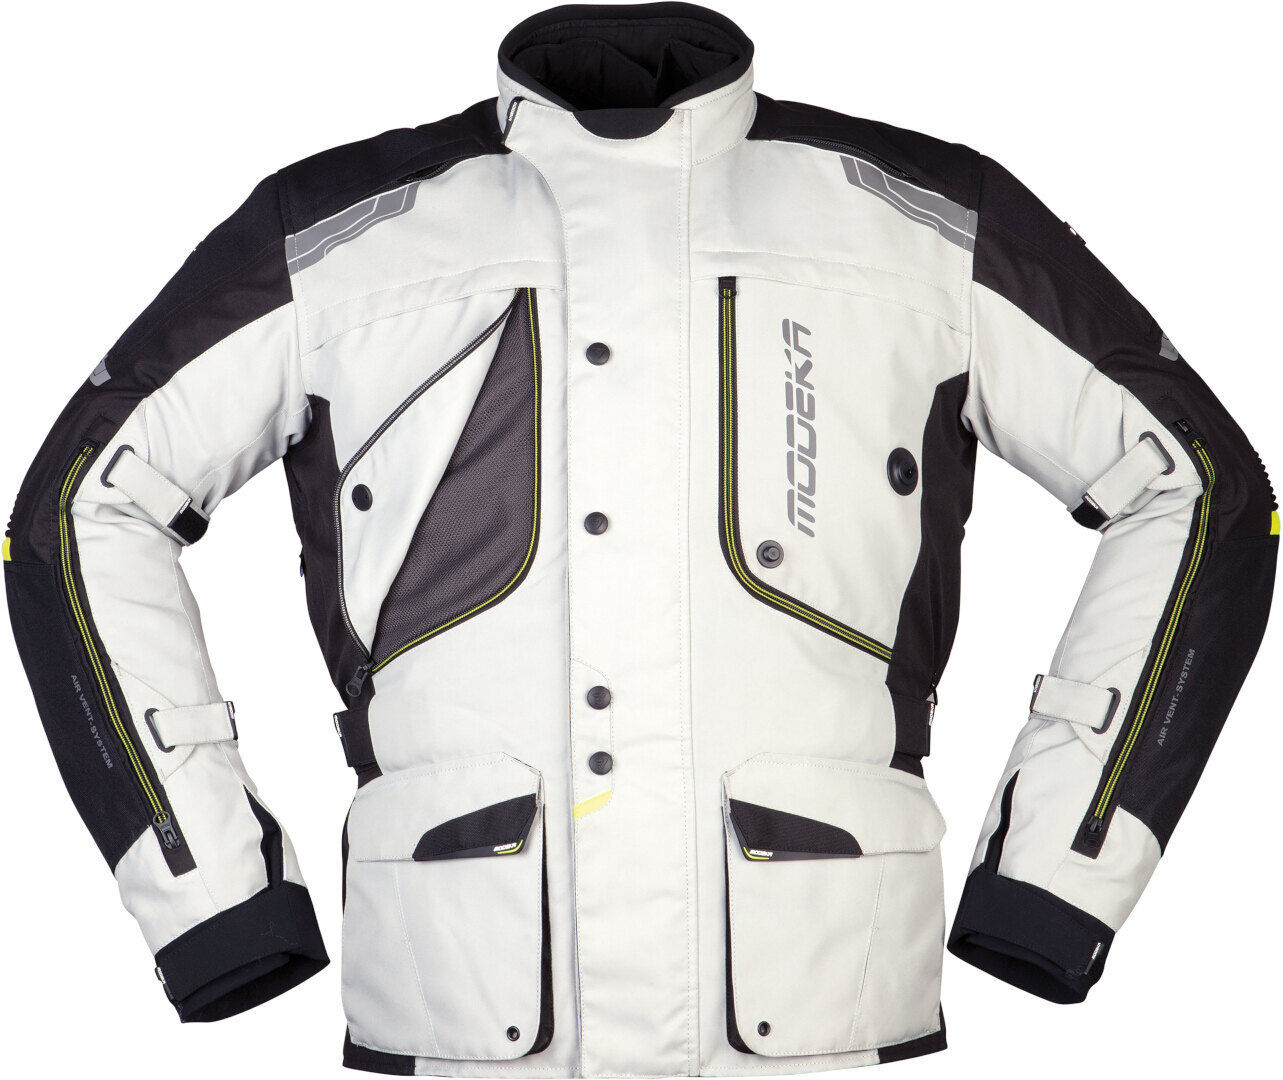 Modeka Aeris Motorsykkel tekstil jakke 2XL Svart Grå